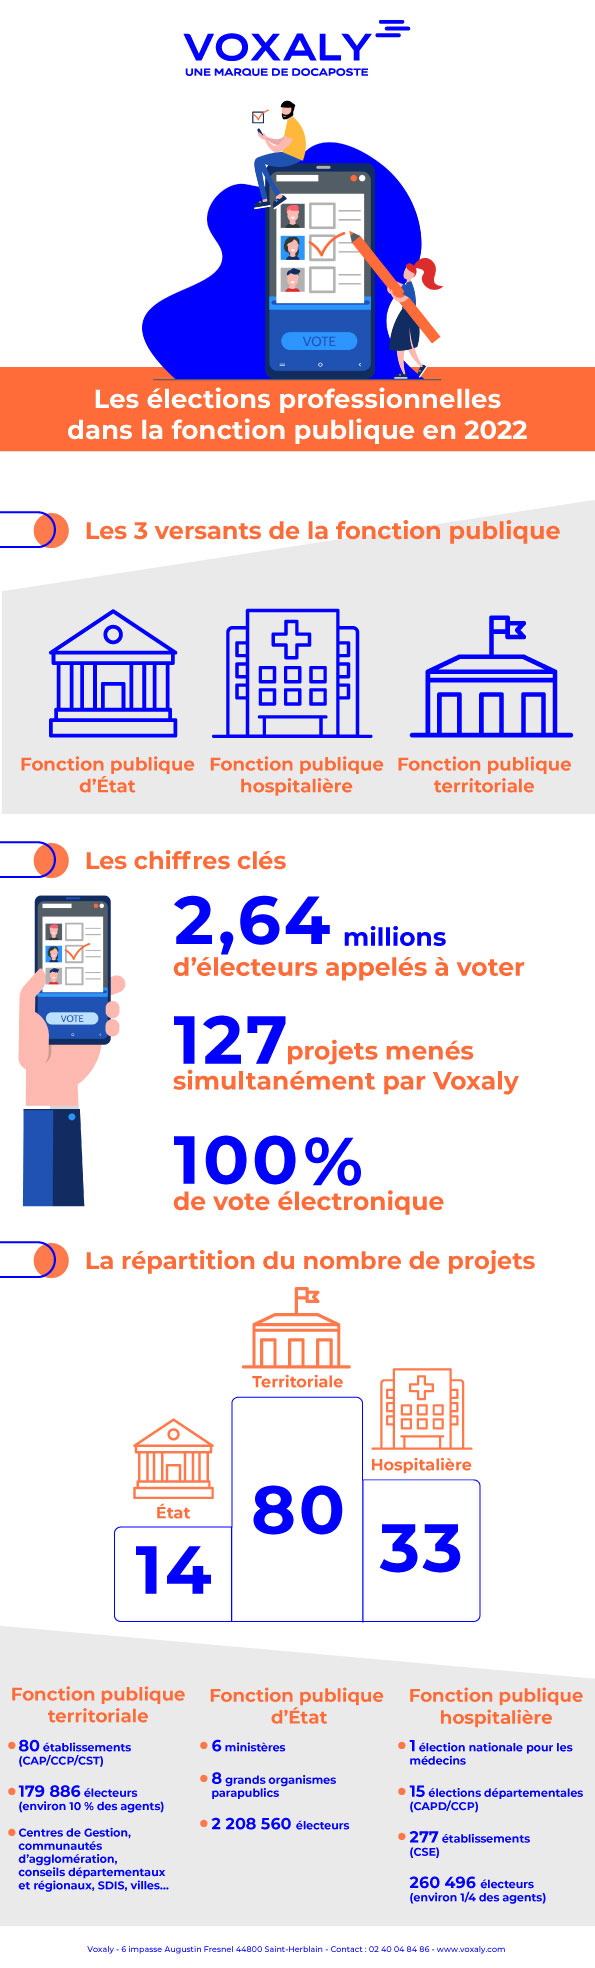 Voxaly -infographie elections professionnelles fonction publique